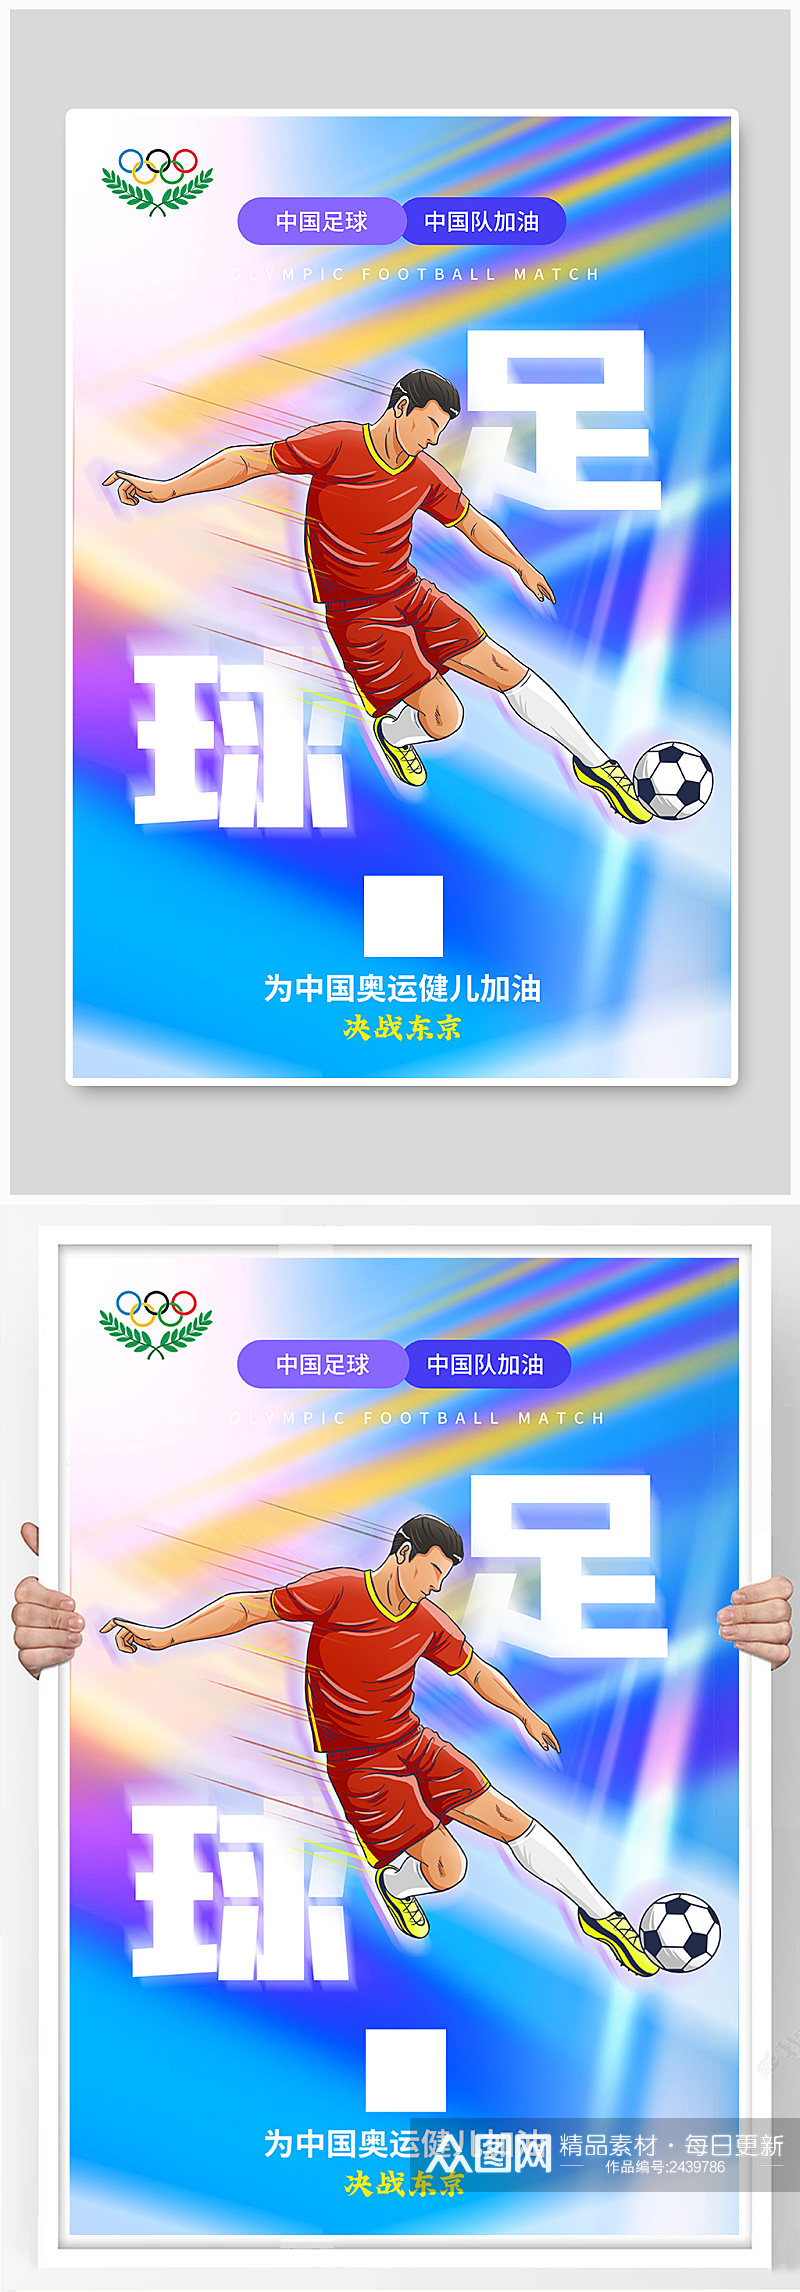 炫彩东京奥运会足球比赛海报素材